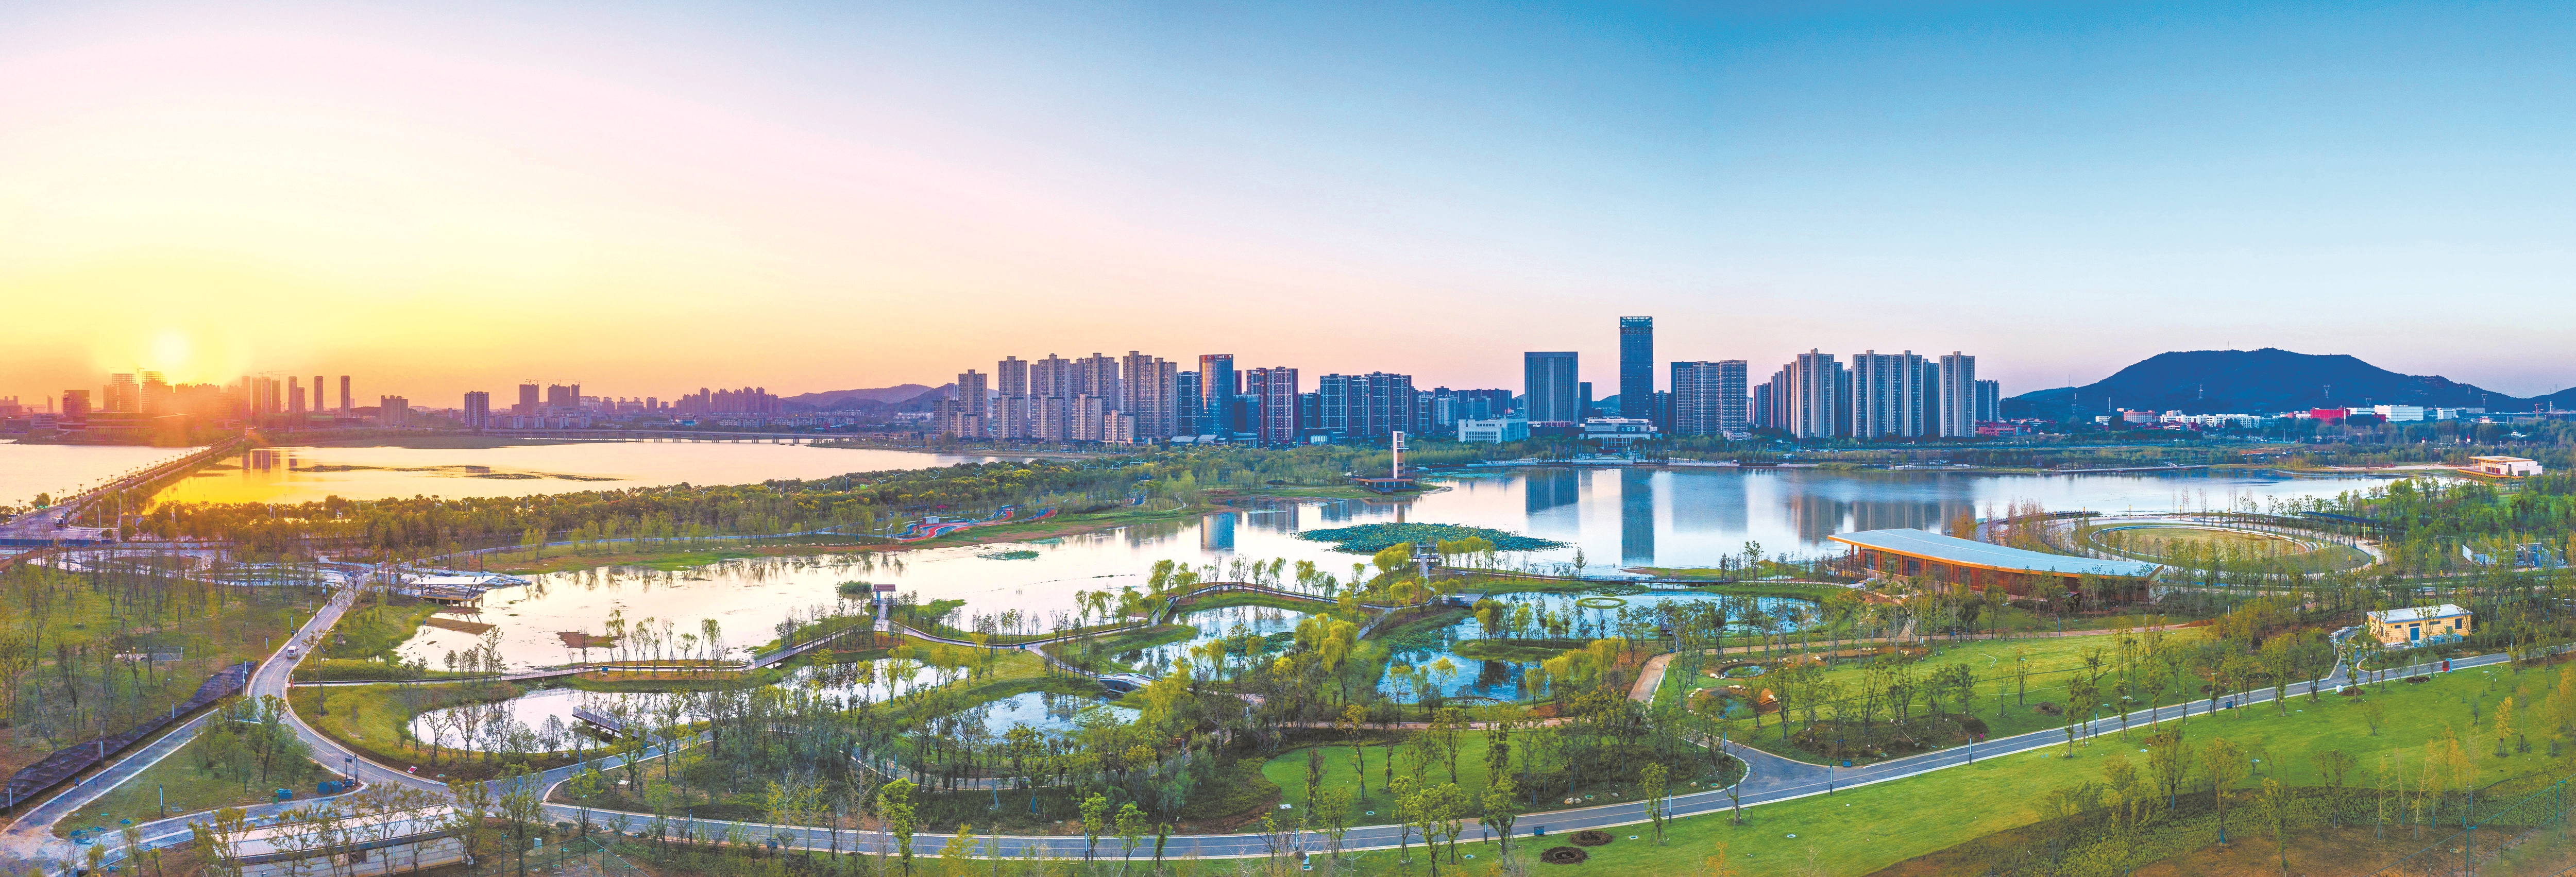 武汉新城区中最大的公园——江夏中央大公园    王运良摄美丽的斧头湖